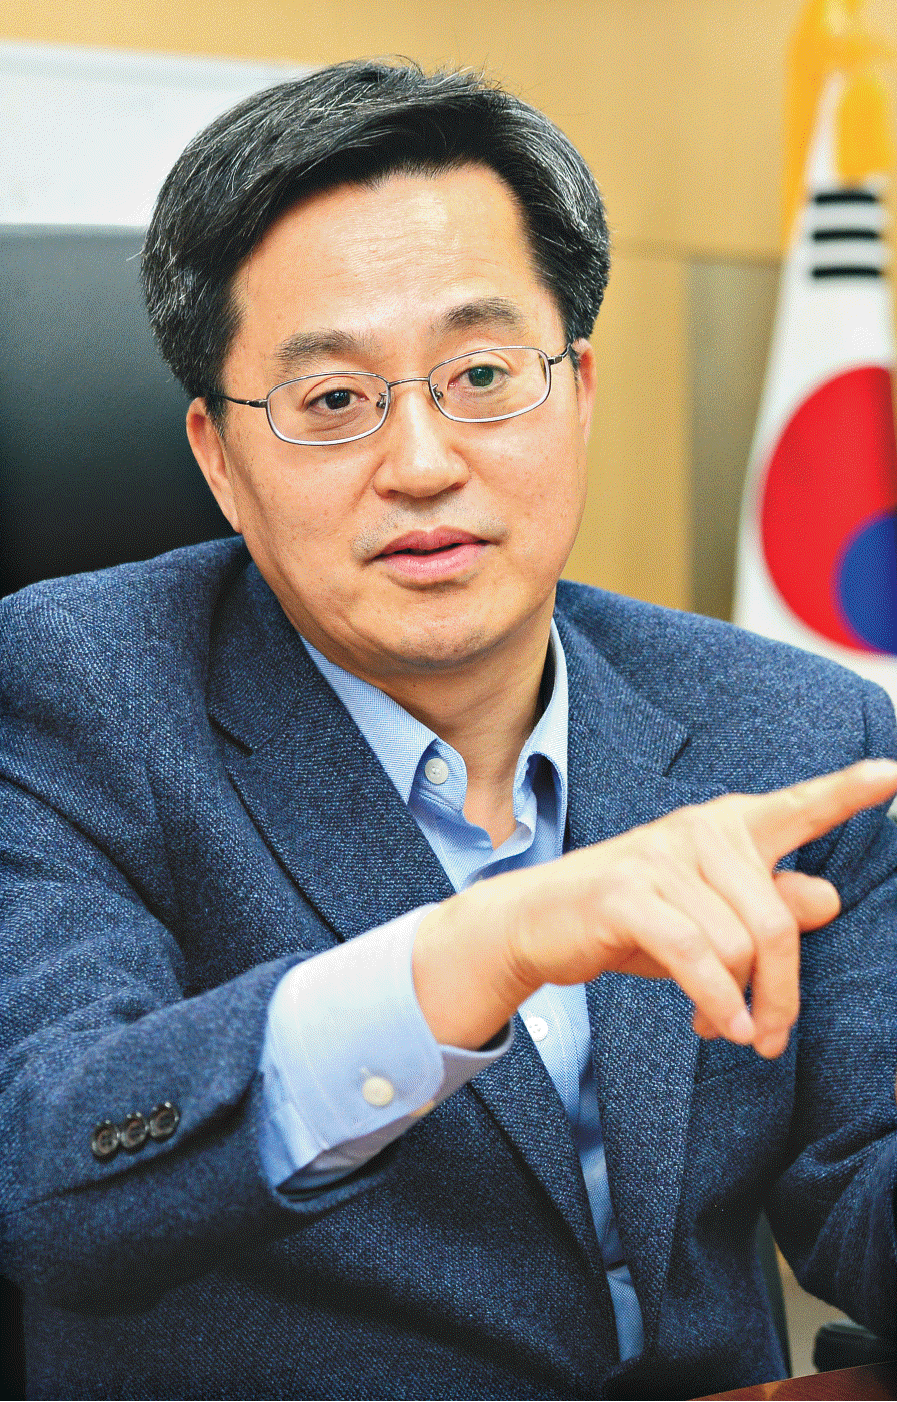 문화일보, 김동연 총장 인터뷰 게재